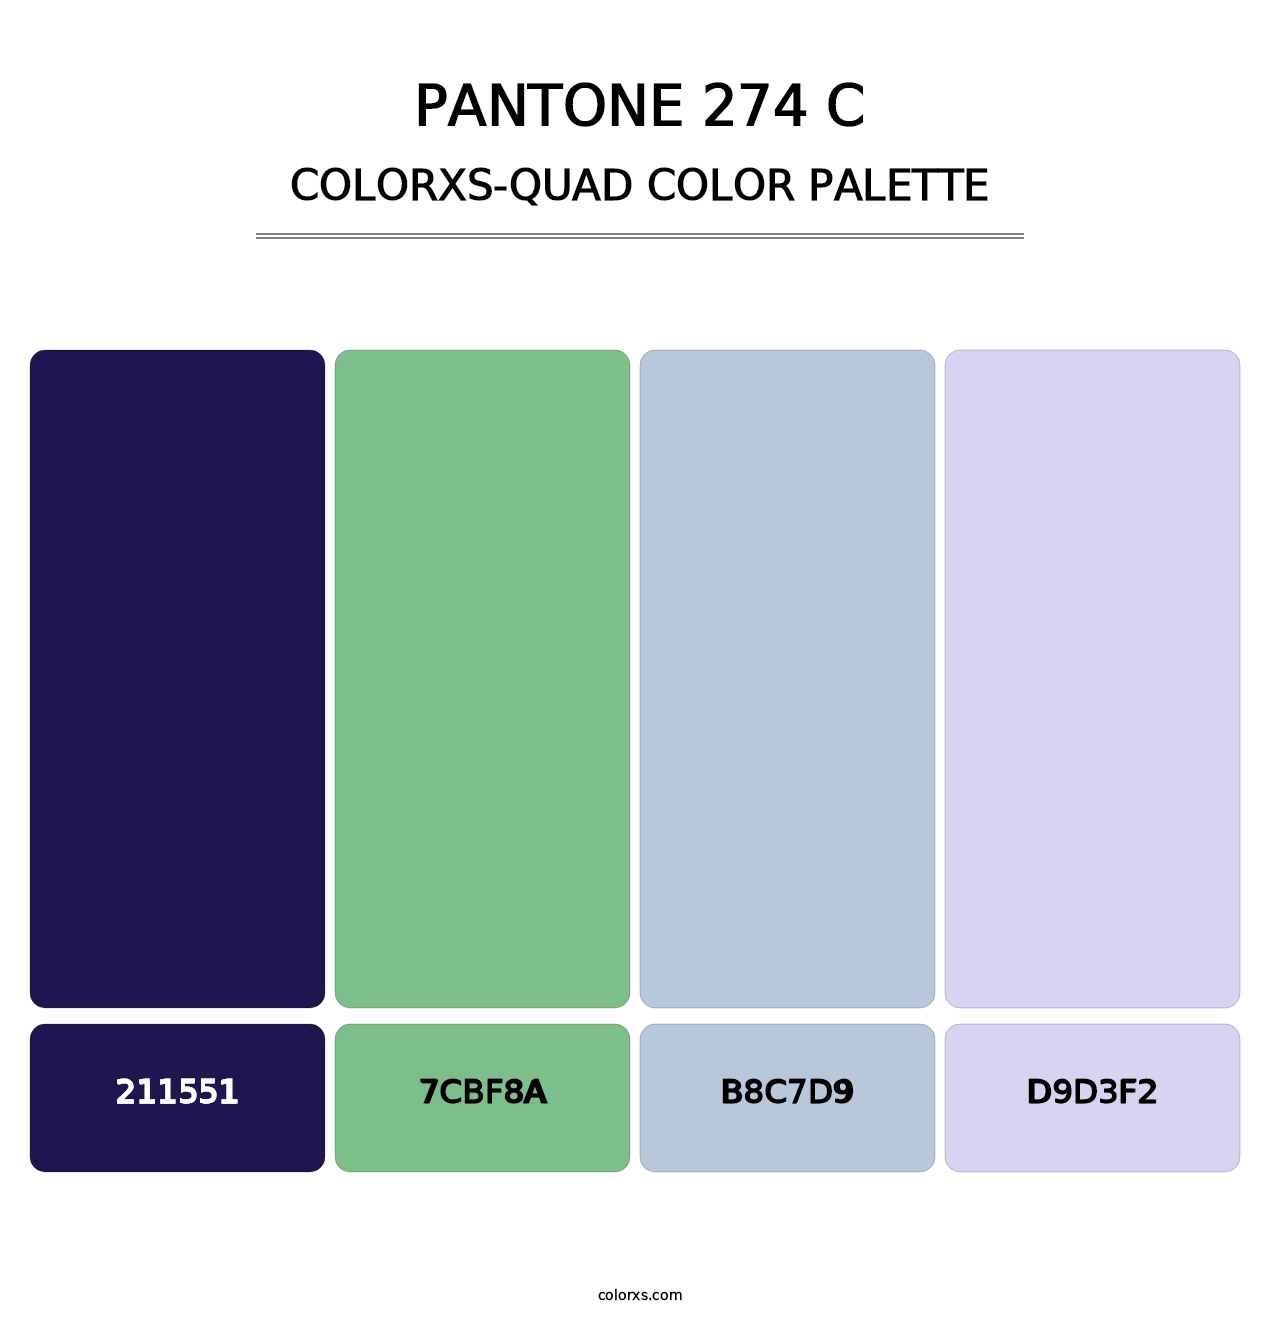 PANTONE 274 C - Colorxs Quad Palette